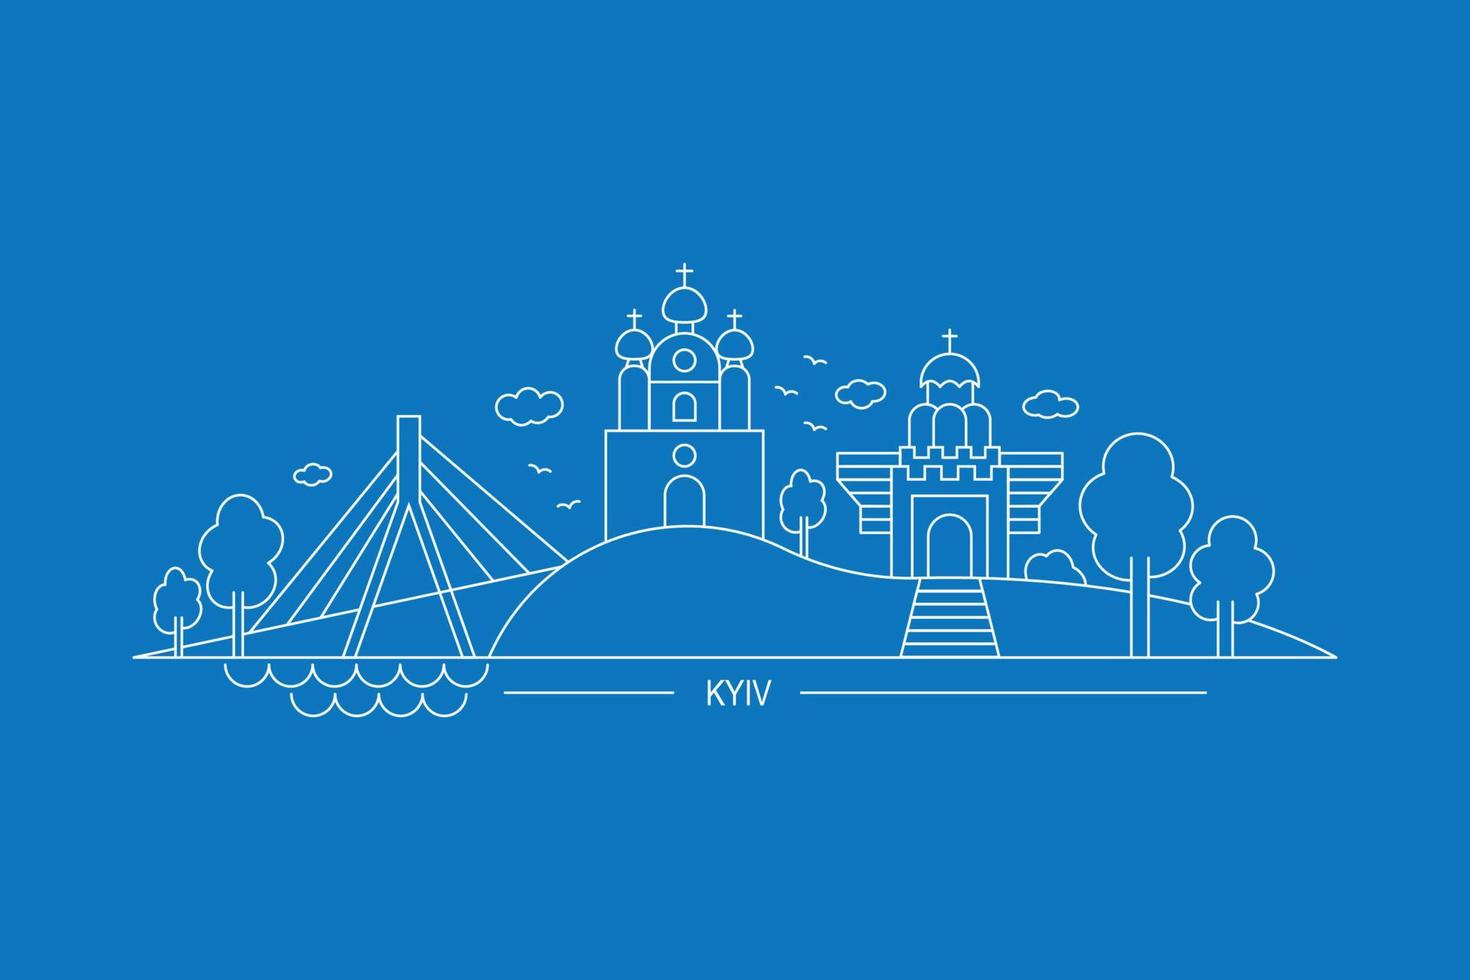 panorama de kyiv, os principais pontos turísticos da capital da ucrânia, vetor plano, arte de linha em um fundo azul, inscrição kyiv